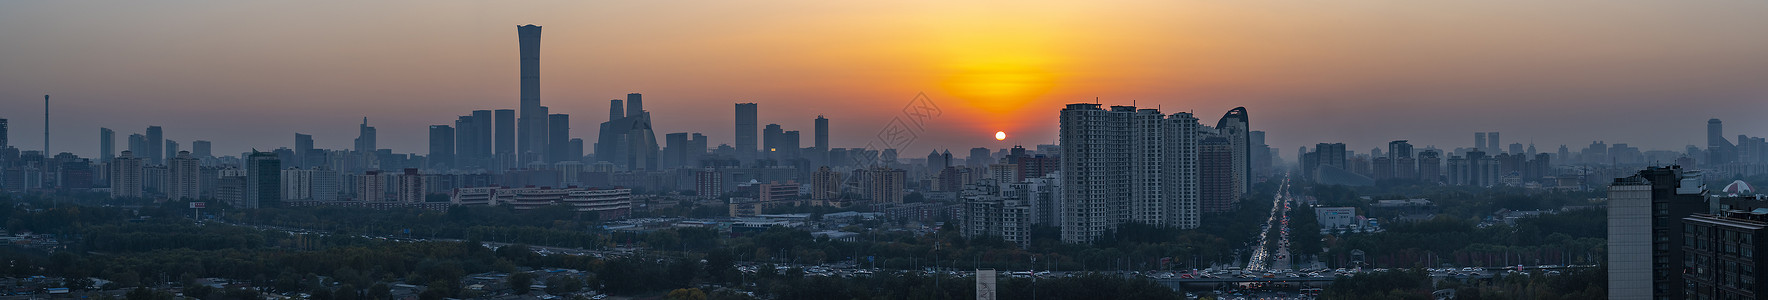 夕阳红北京国贸全景长片图片